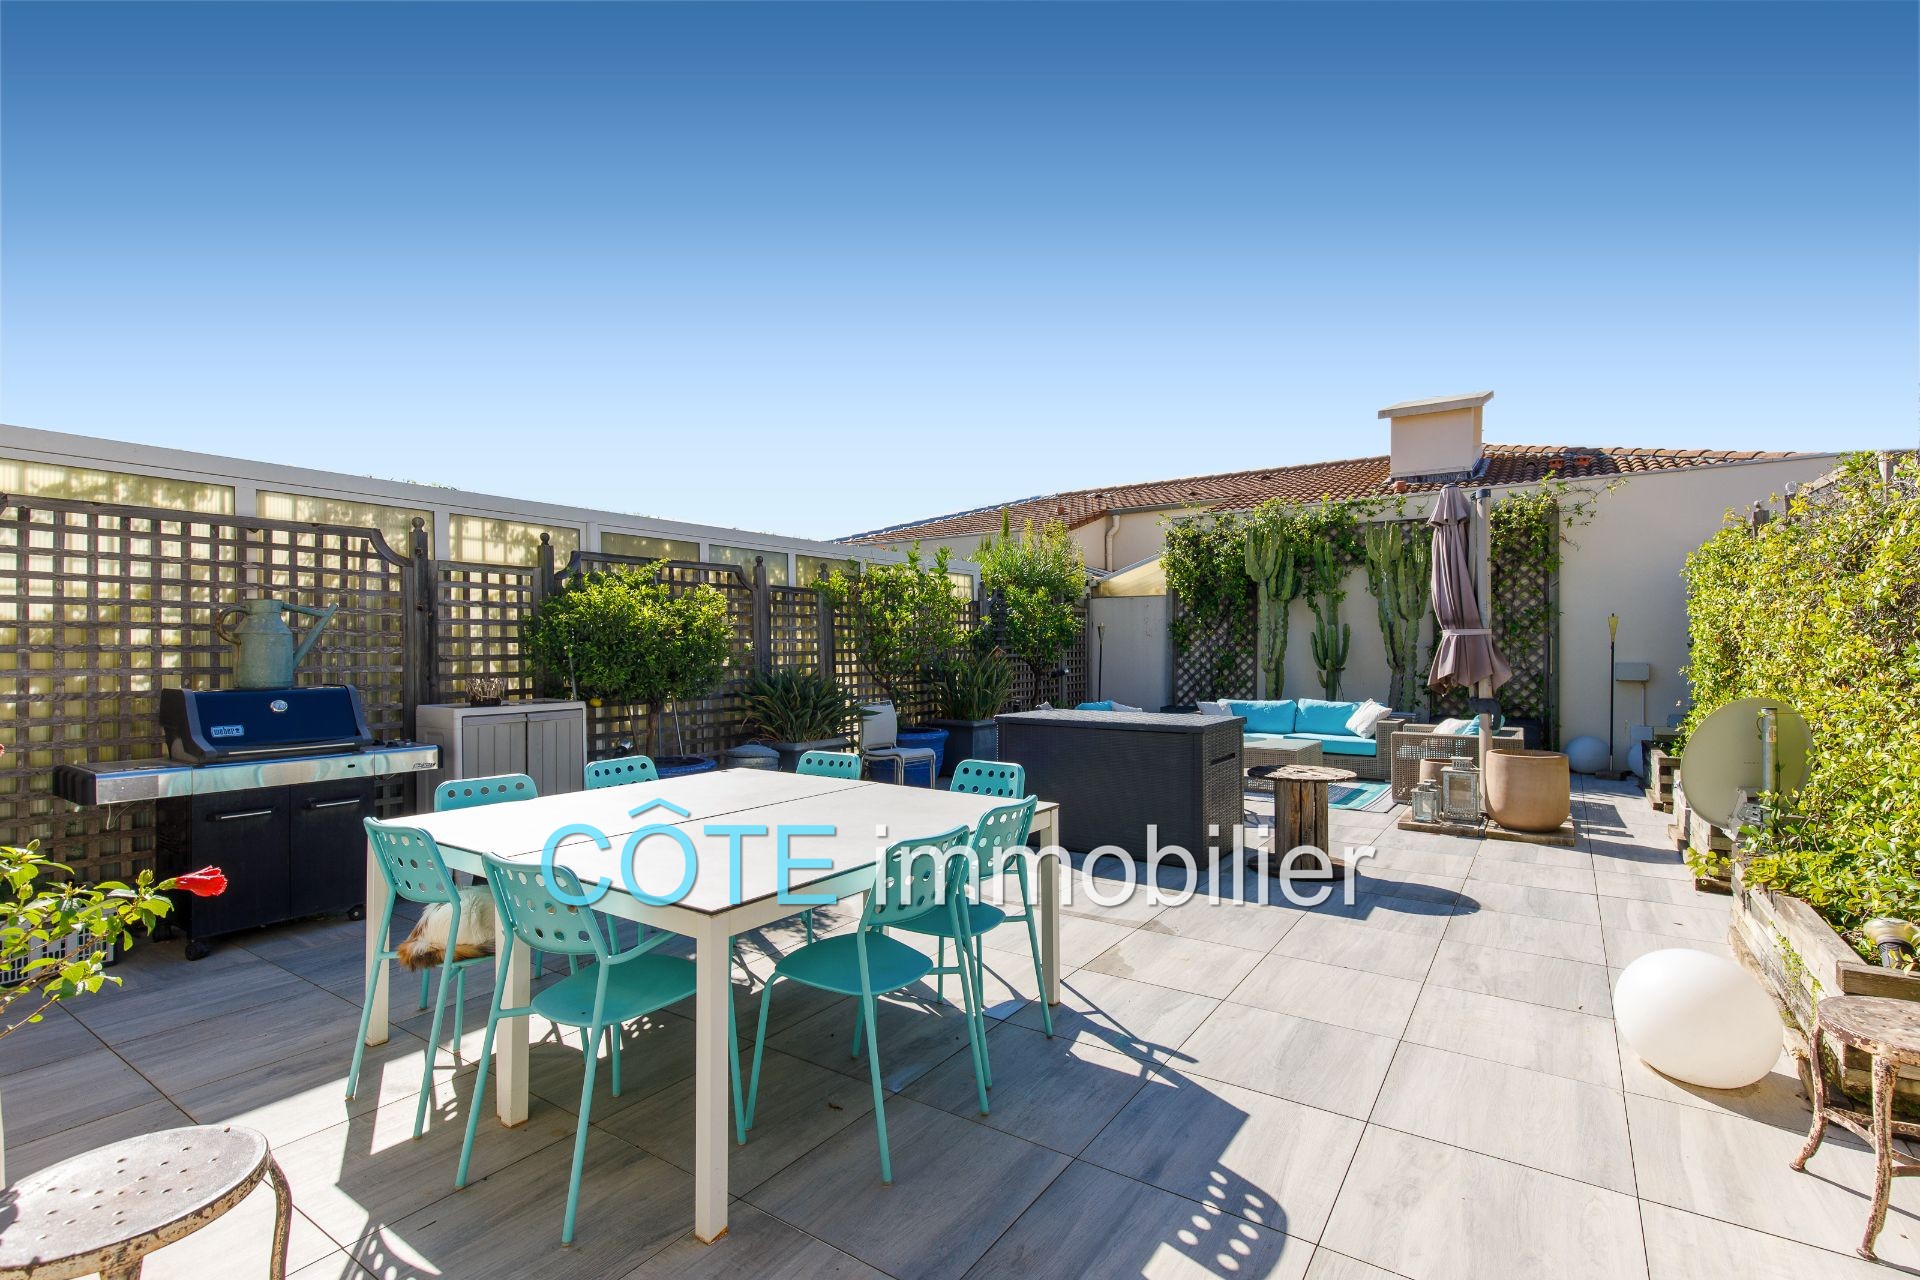 Vente Appartement 145m² à Cannes (06400) - Côte Immobilier